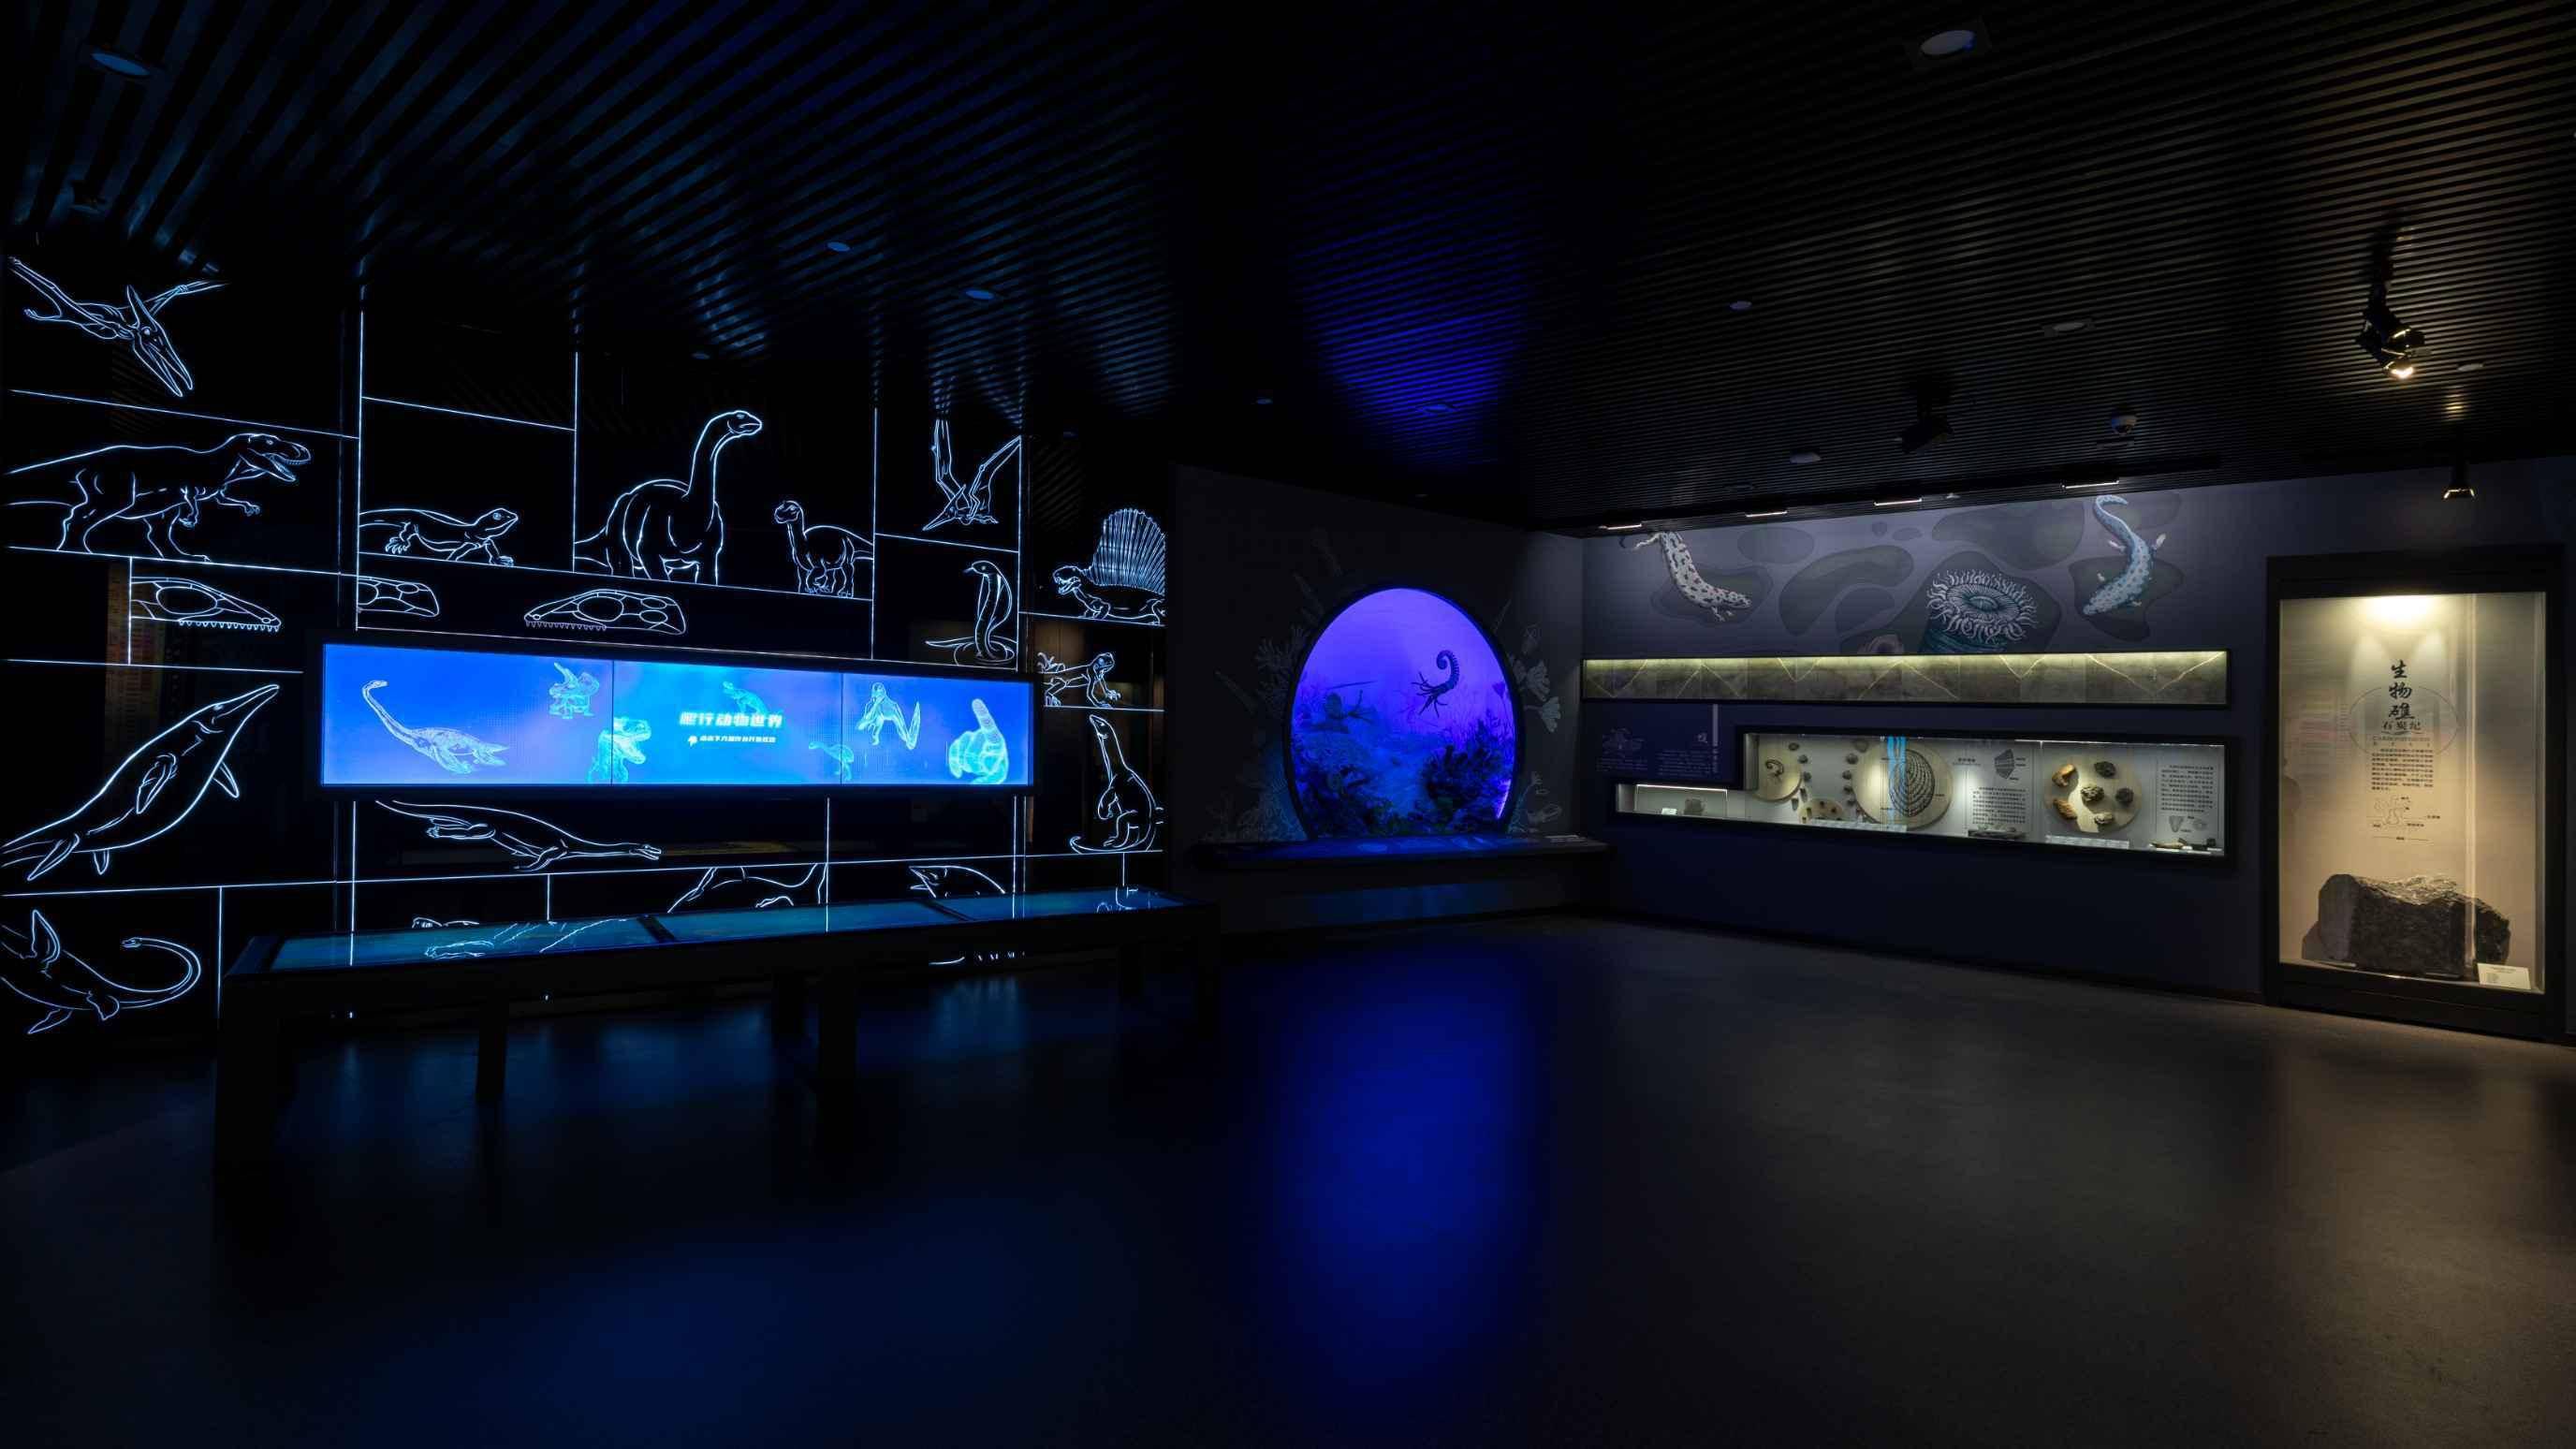 这是一个展览室内景，墙上有海洋生物的线条图案，中间展示屏幕和展示柜，灯光昏暗，营造出神秘的海底世界氛围。